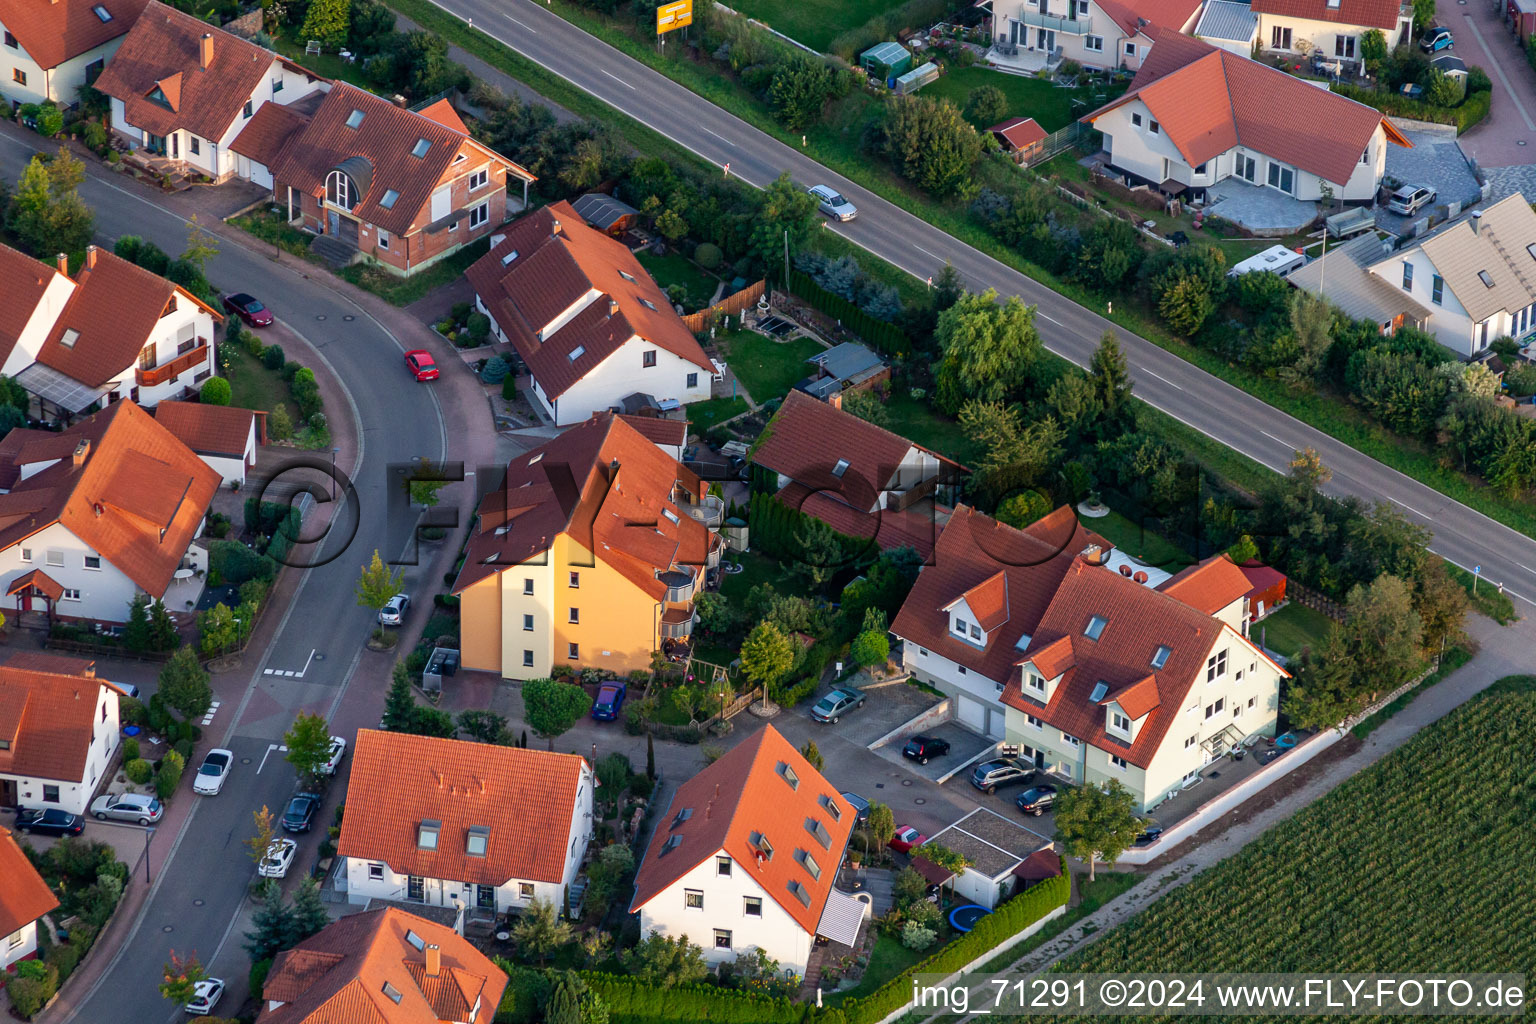 Vue aérienne de Bague de Poméranie à Offenbach an der Queich dans le département Rhénanie-Palatinat, Allemagne